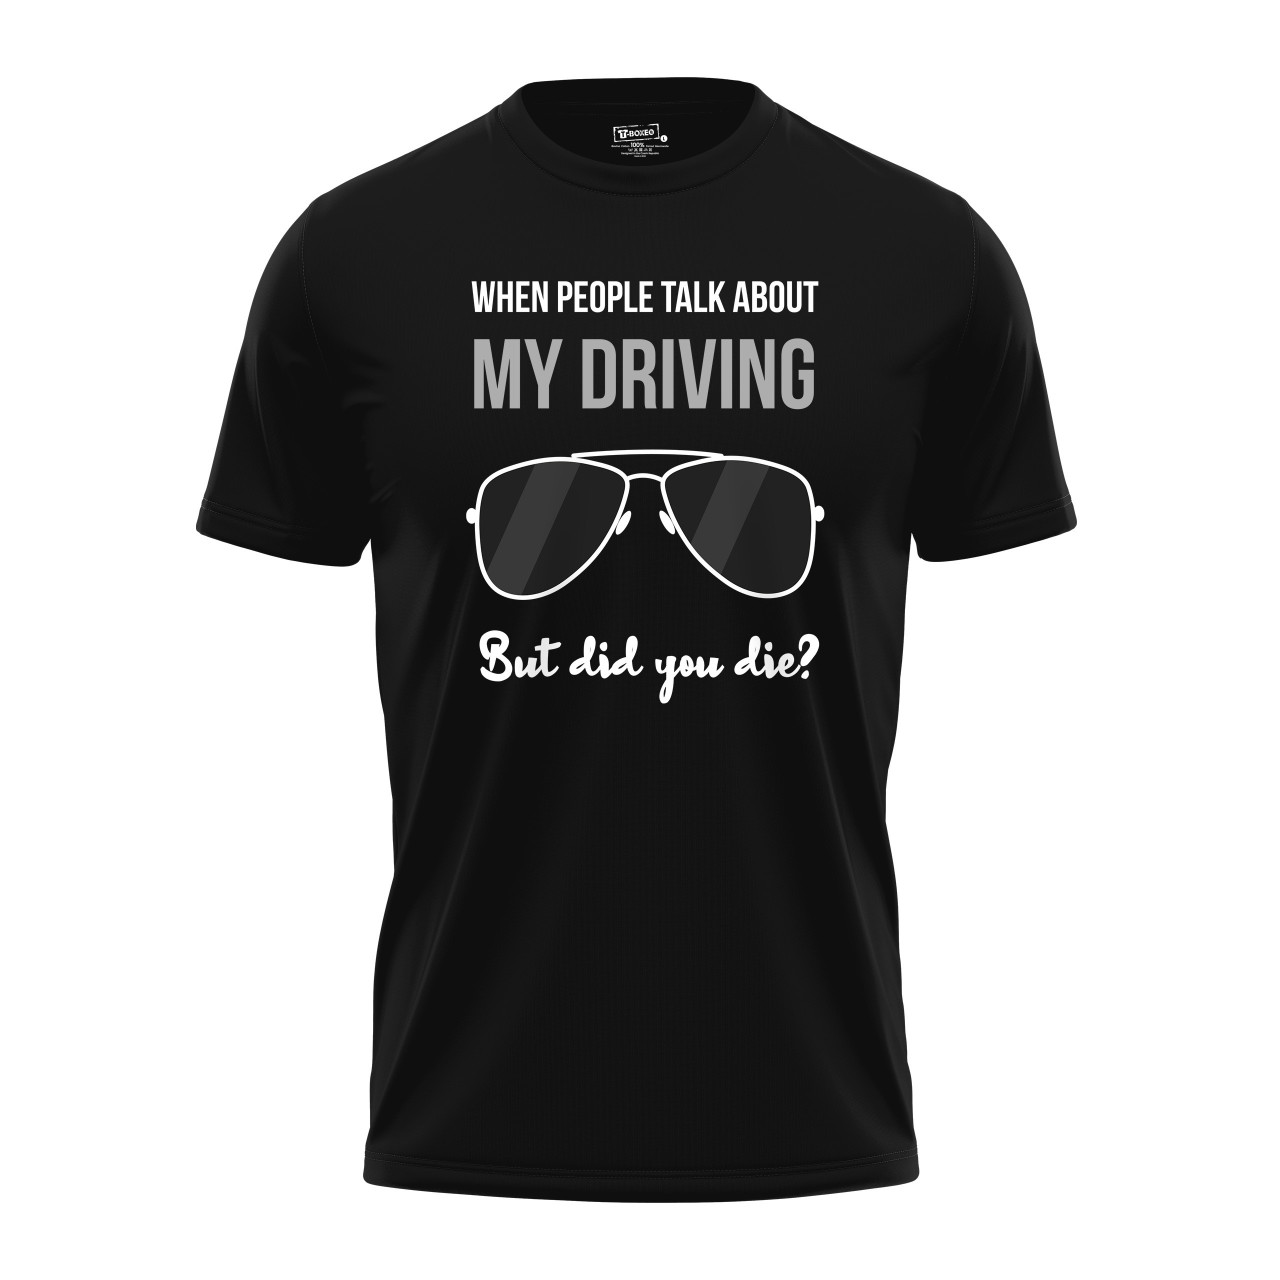 Pánské tričko s potiskem “My driving”